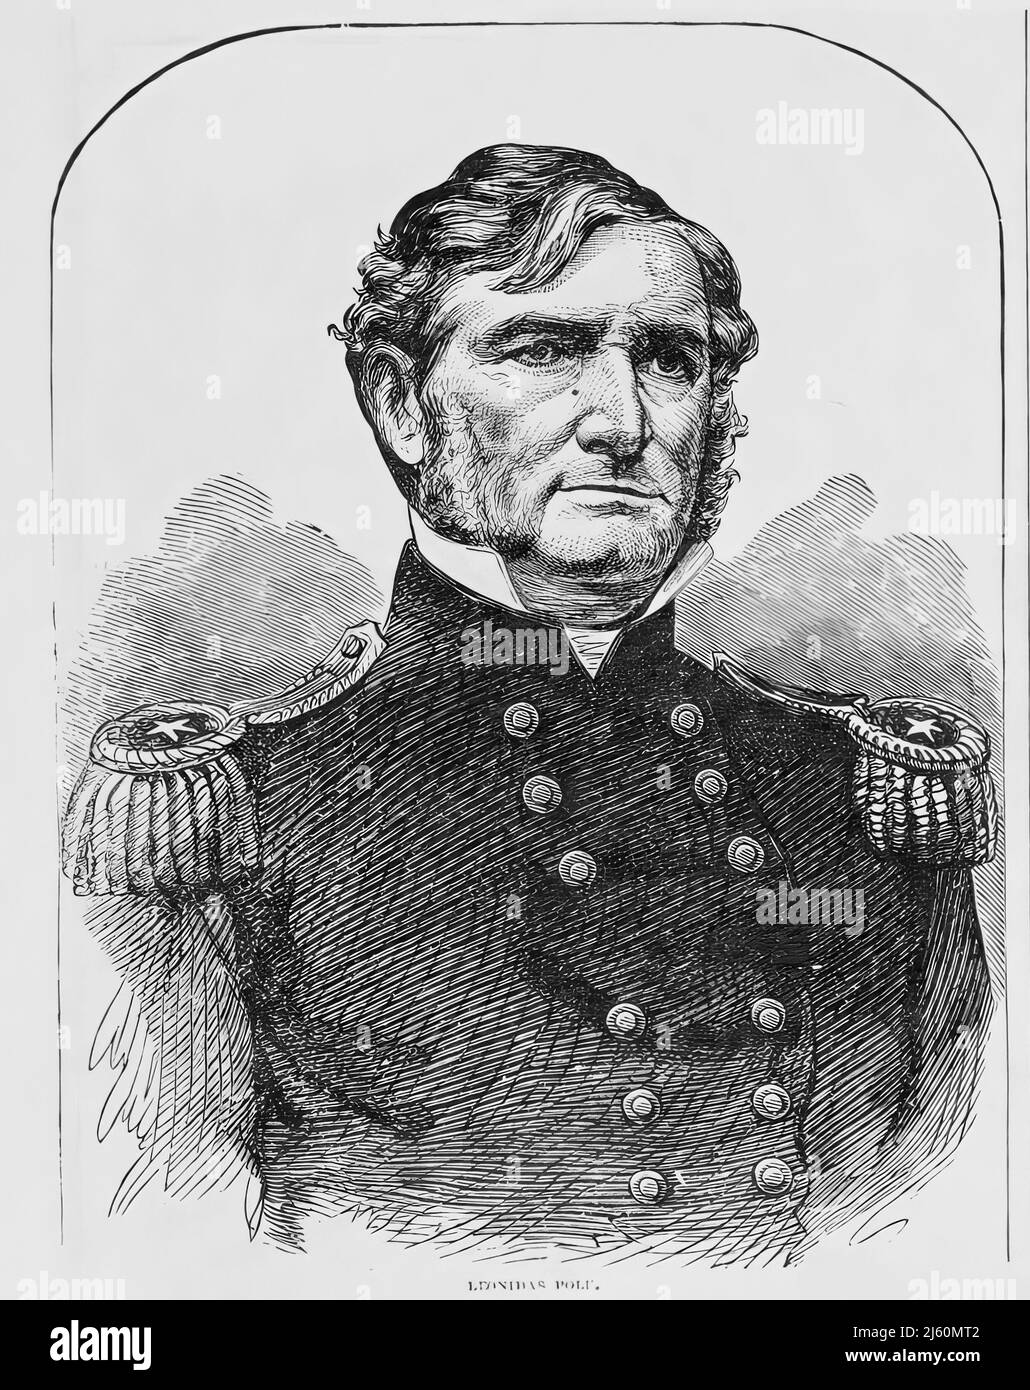 Portrait de Leonidas Polk, général de l'armée confédérée pendant la guerre civile américaine. illustration du siècle 19th Banque D'Images